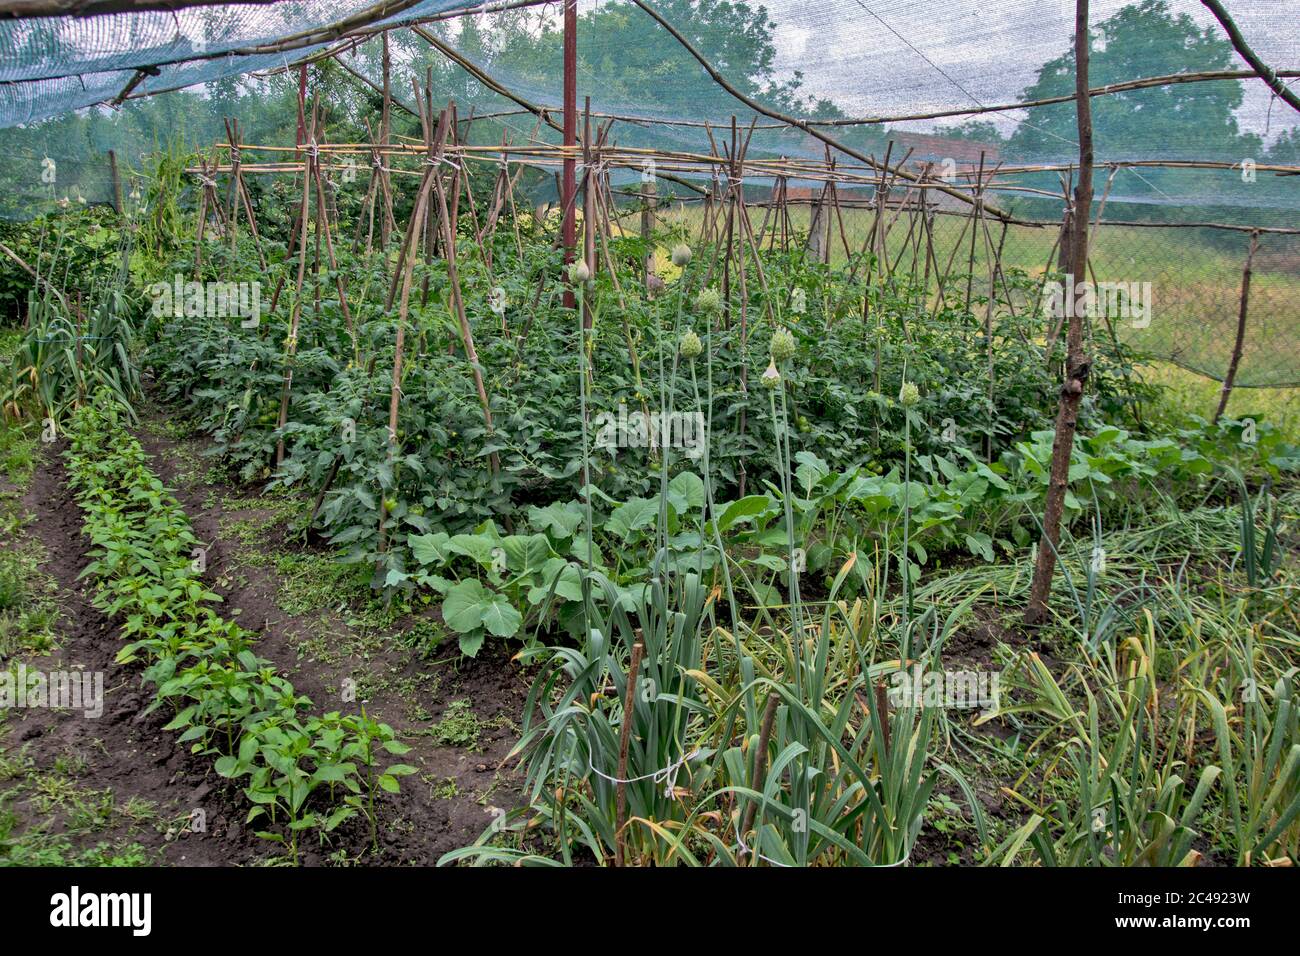 Teil eines ländlichen Gartens mit frühem Gemüse unter einem Schutznetz. Netzwerkschutz vor direkter Sonneneinstrahlung sowie vor Witterungseinflüssen. Stockfoto